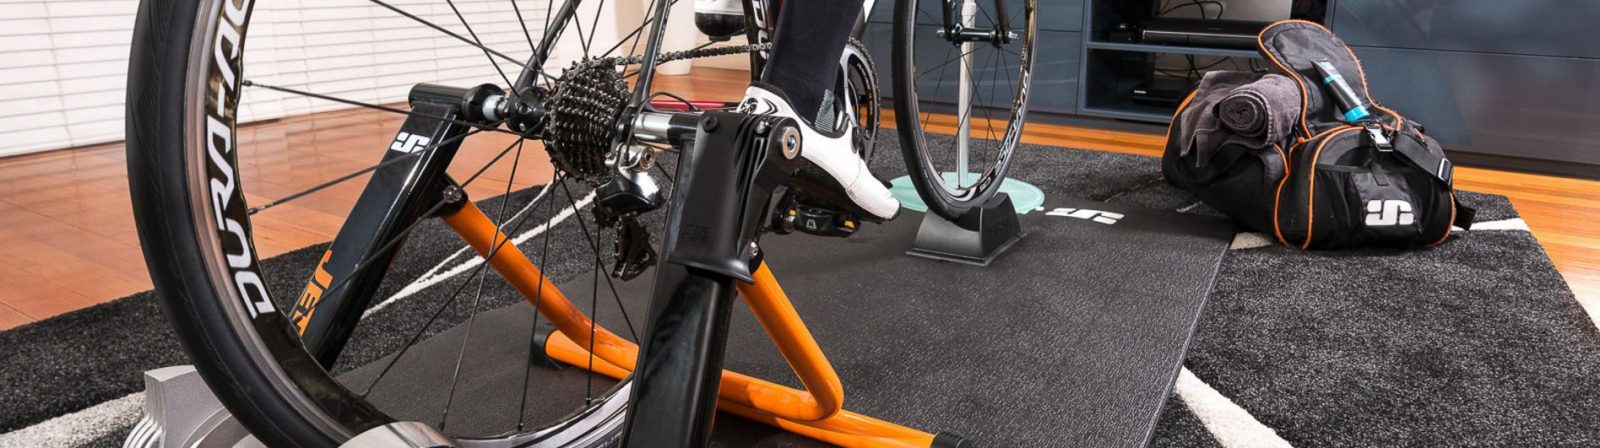 carbon fiber bike on a indoor trainer